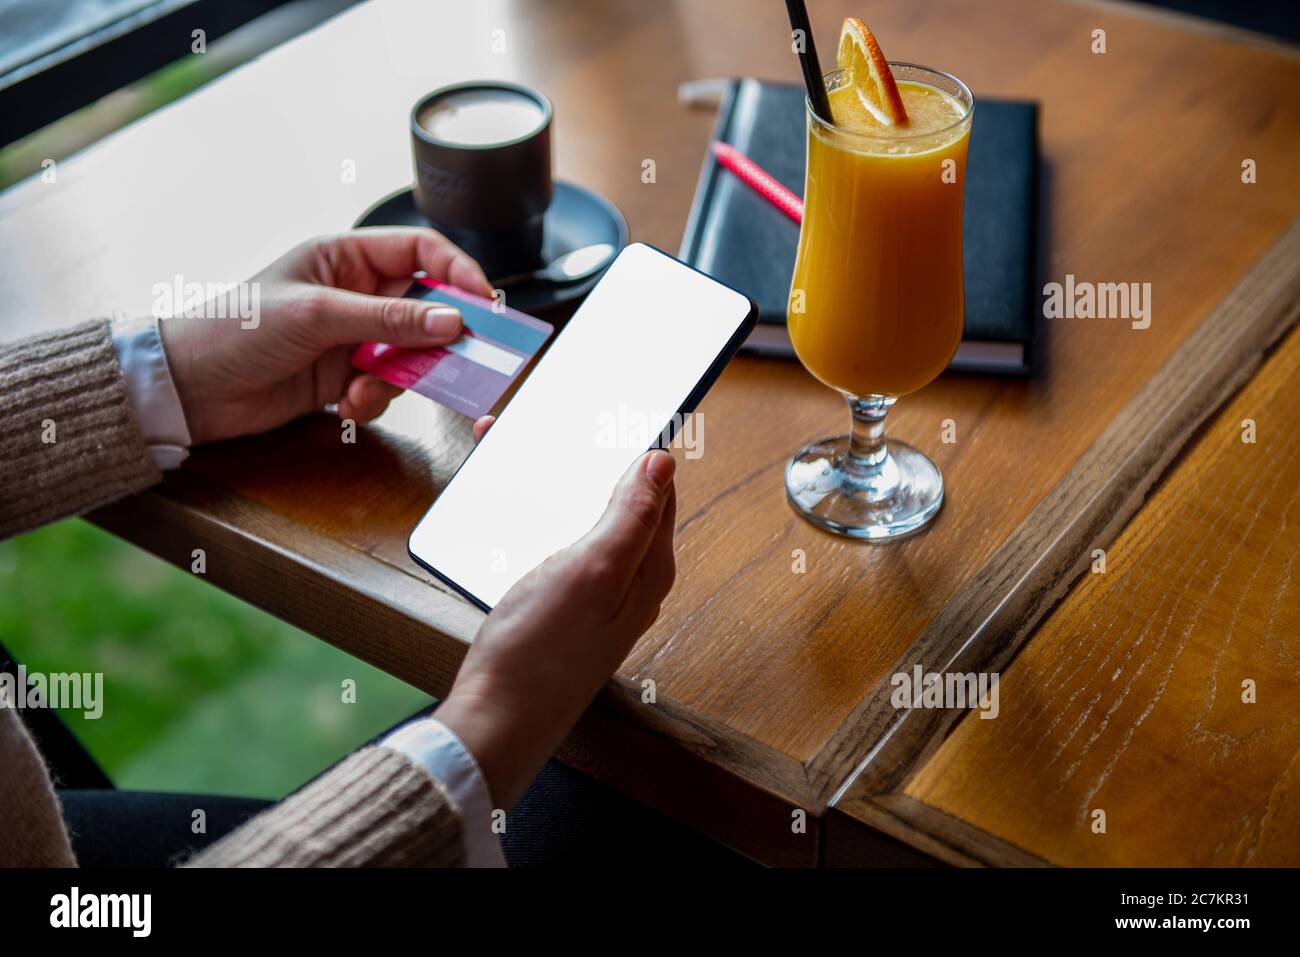 Achat en ligne , concept Internet. Femme utilisant une carte de crédit et un smartphone vierge au café. Banque D'Images